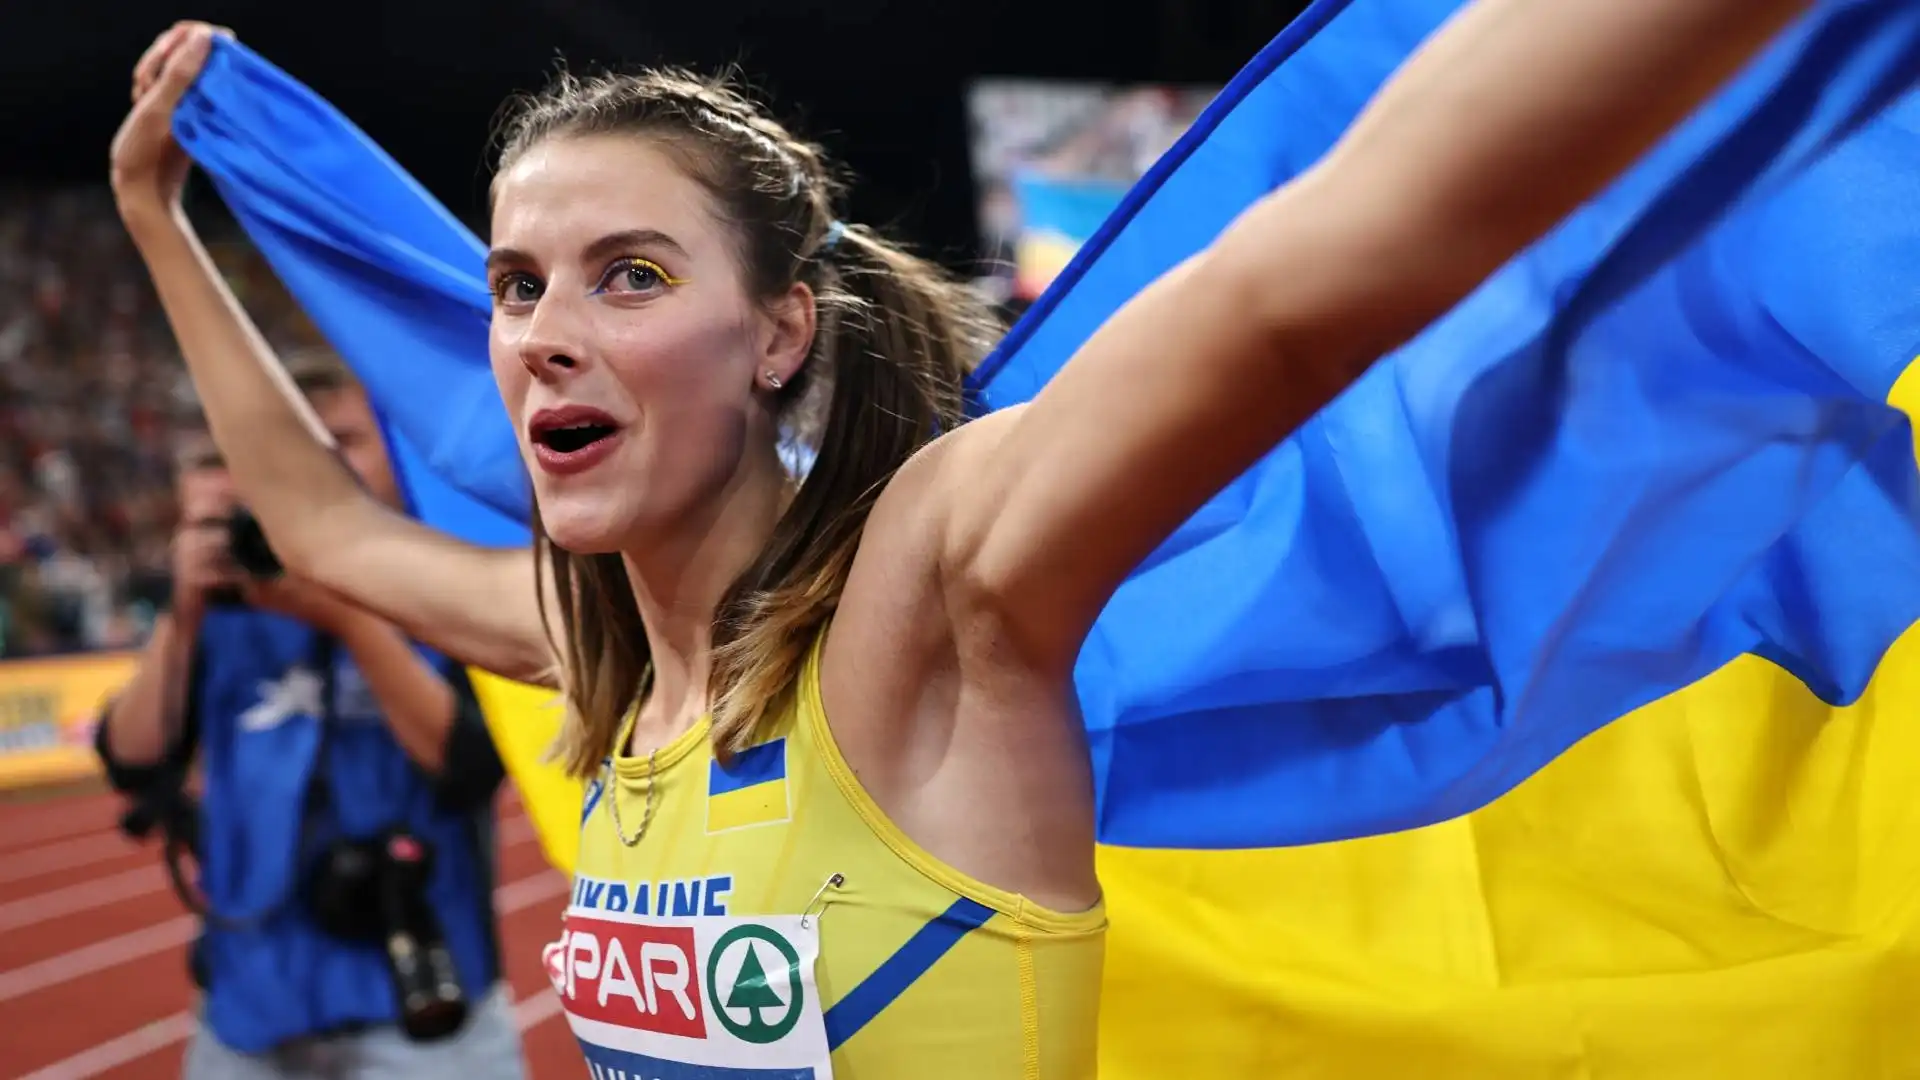 La pazzesca atleta ha vinto l'oro a Monaco di Baviera